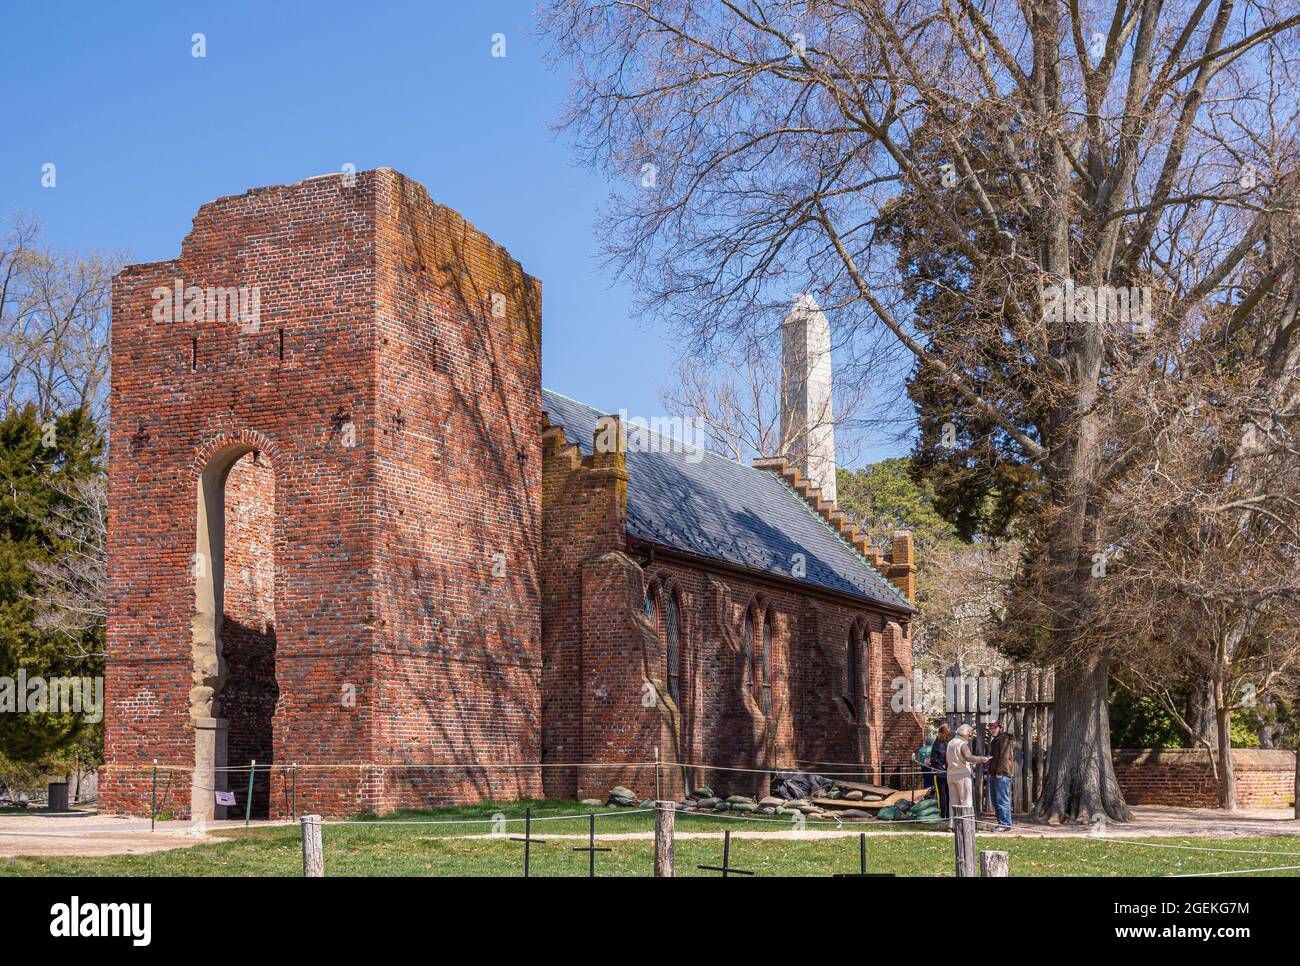 Jamestowne, VA, USA - 1. April 2013: Historische Stätte. Rote Backsteinruine des ursprünglichen Kirchturms mit Kirchenschiff im 20. Jahrhundert gegen blauen Himmel rekonstruiert w Stockfoto